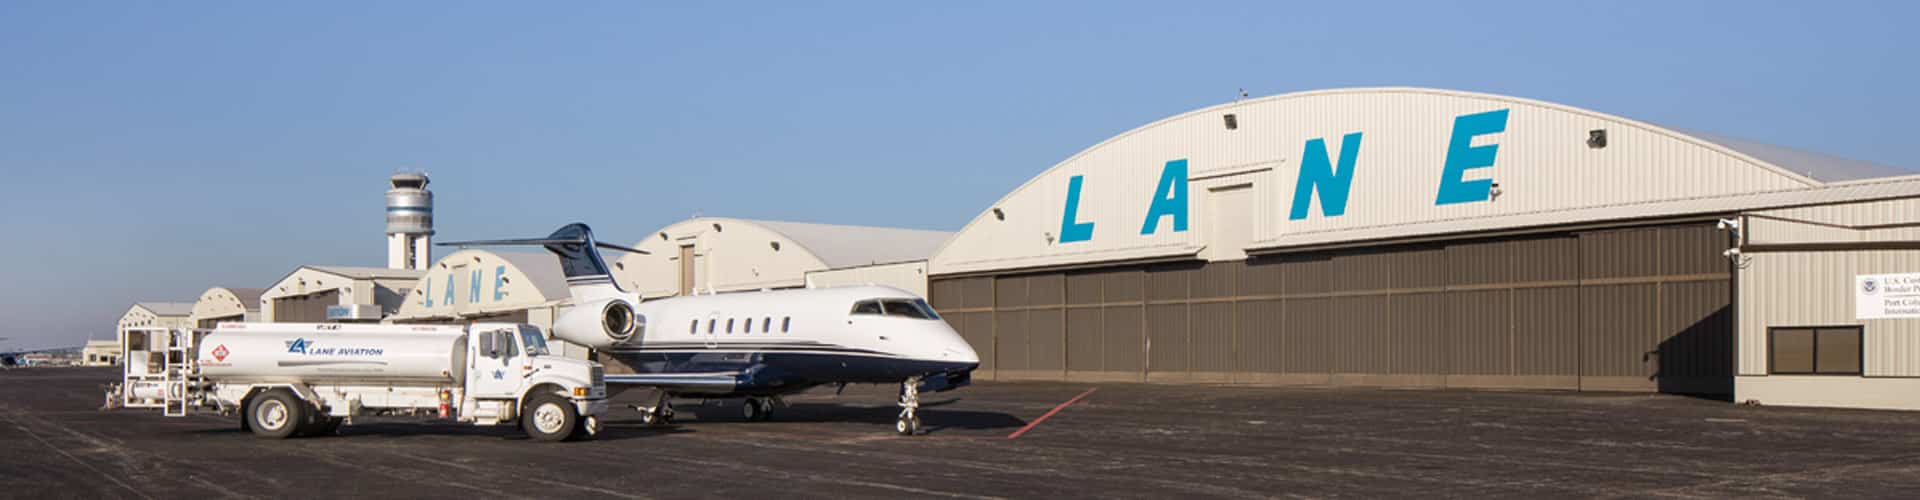 Lane Aviation hangar